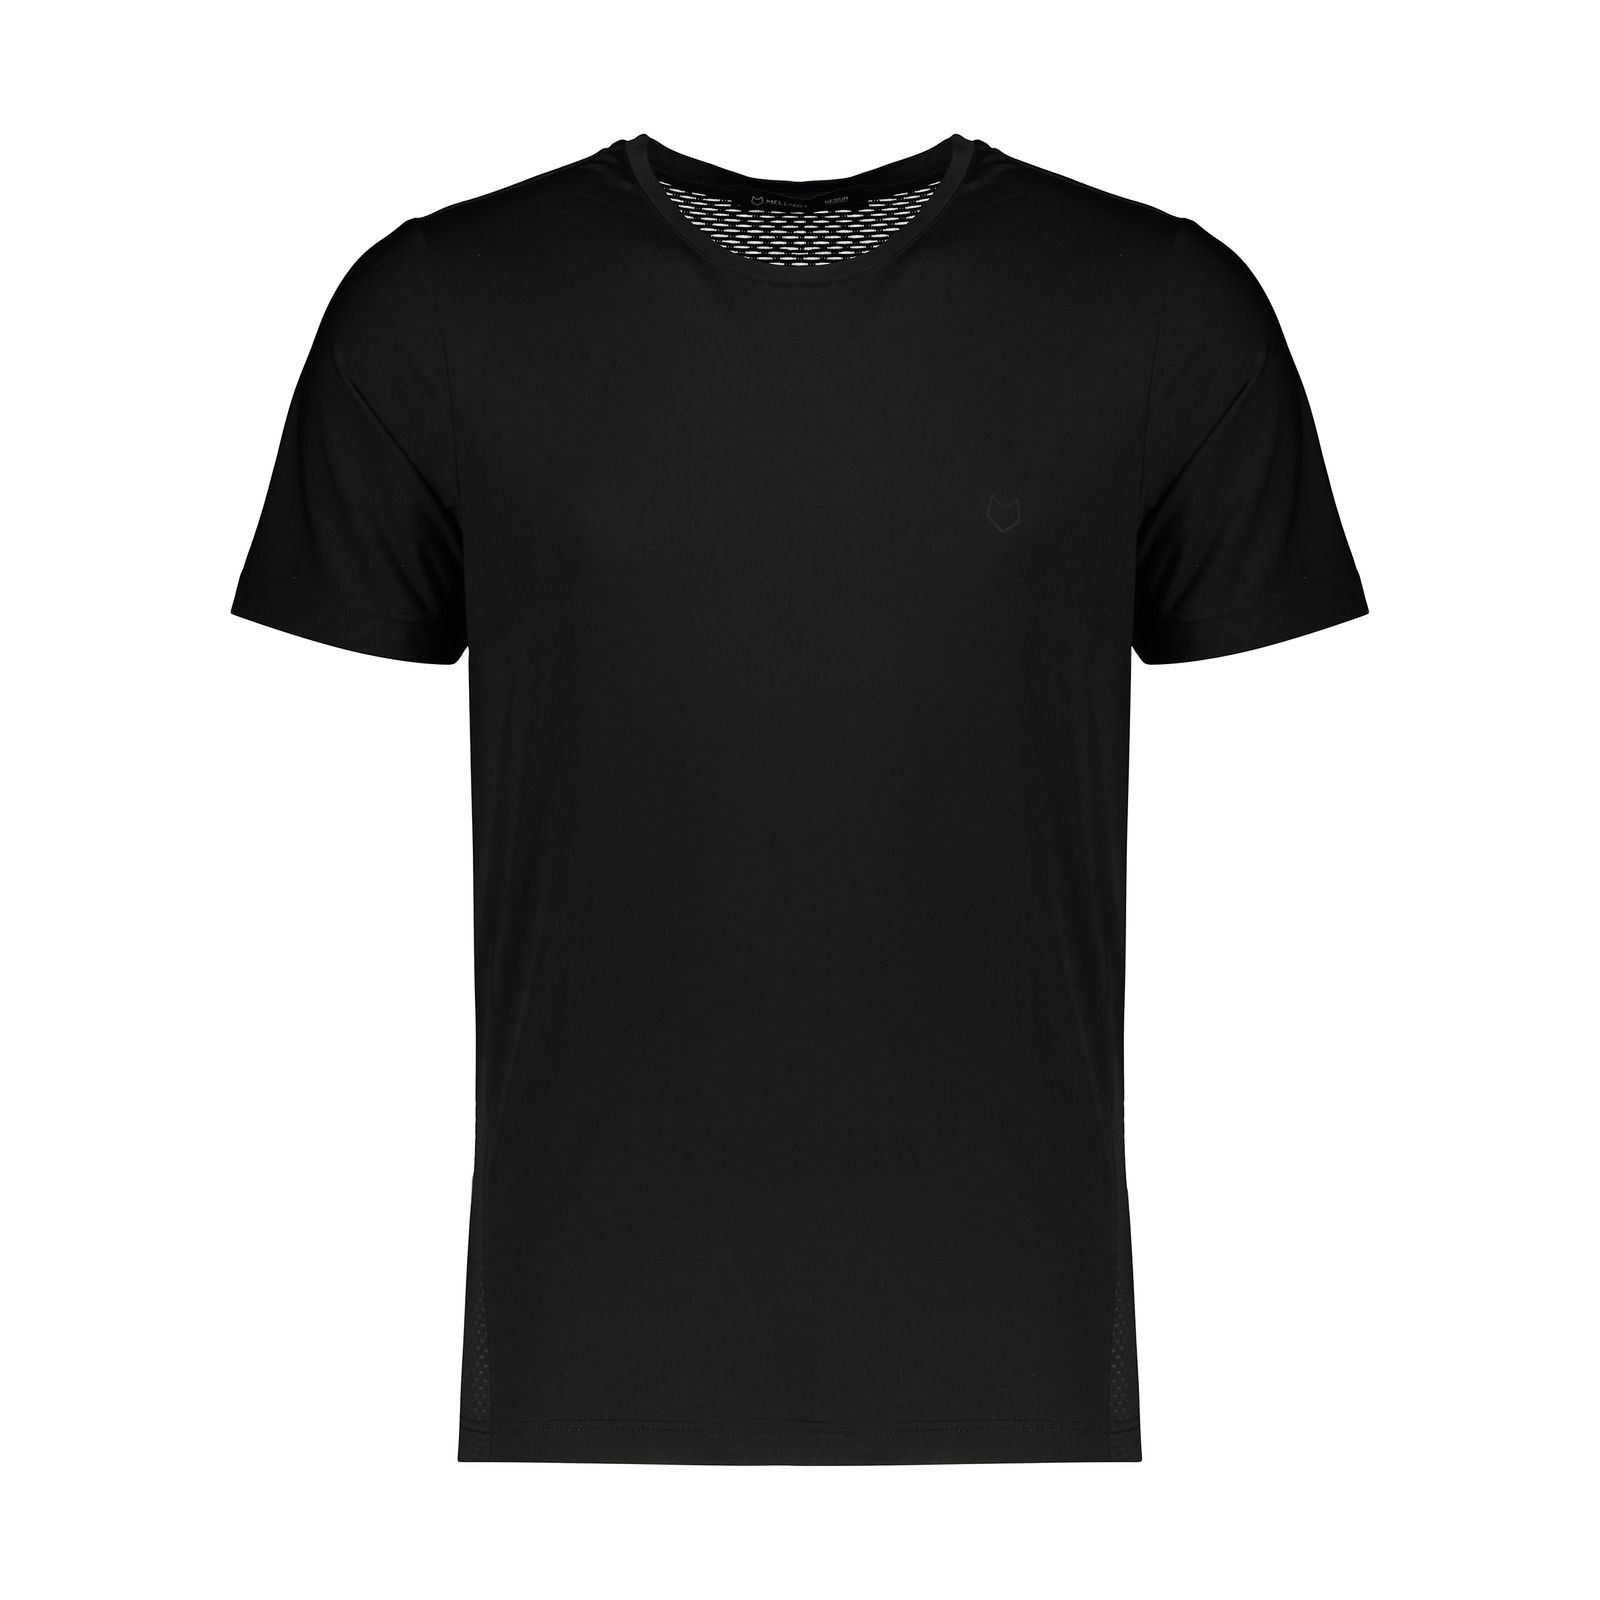 تی شرت آستین کوتاه ورزشی مردانه مل اند موژ مدل M07739-001 -  - 1